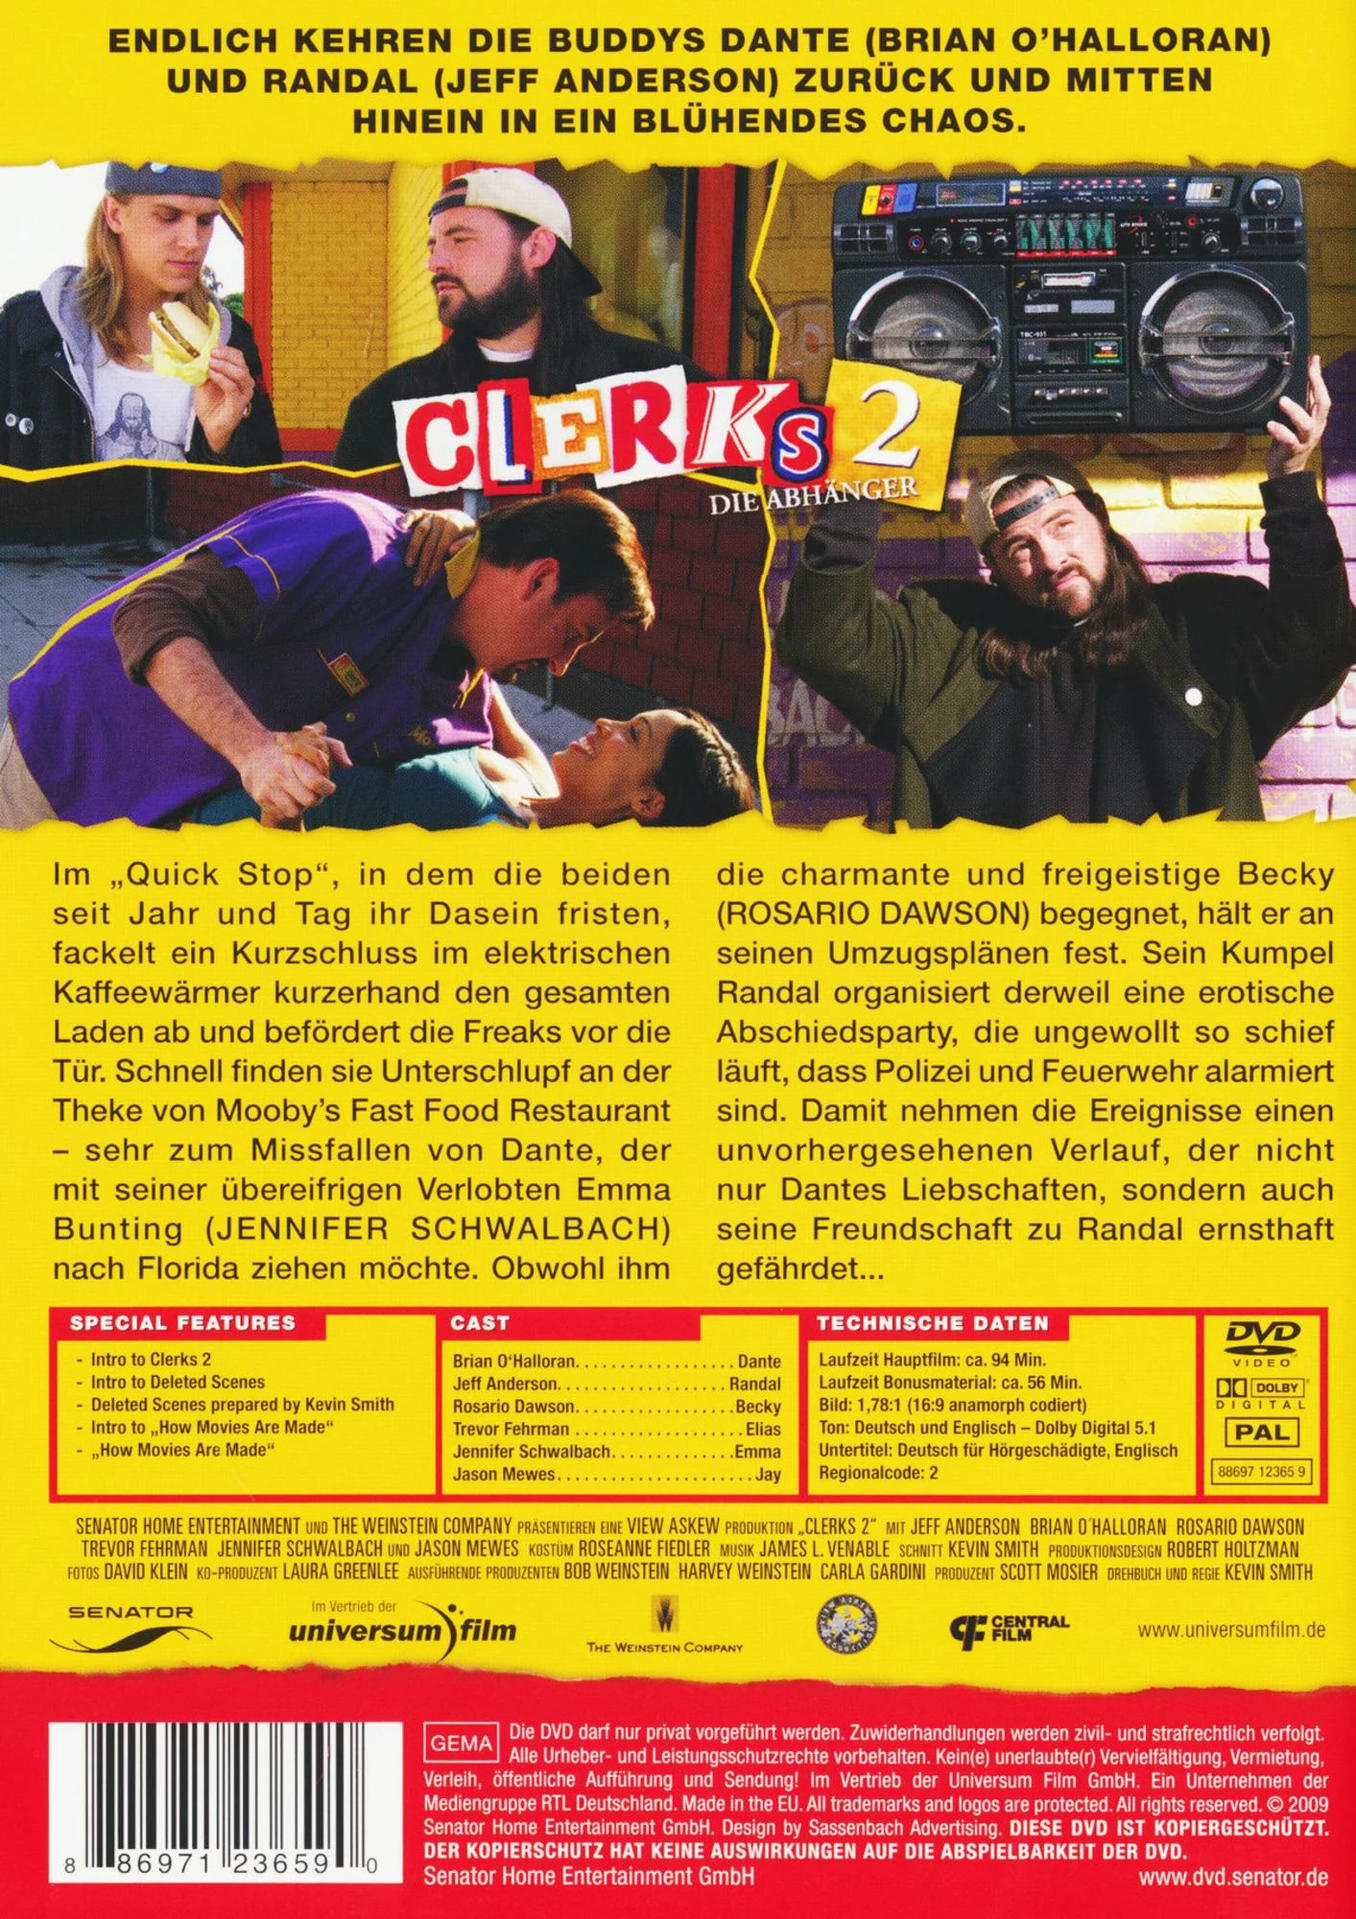 Clerks 2 DVD